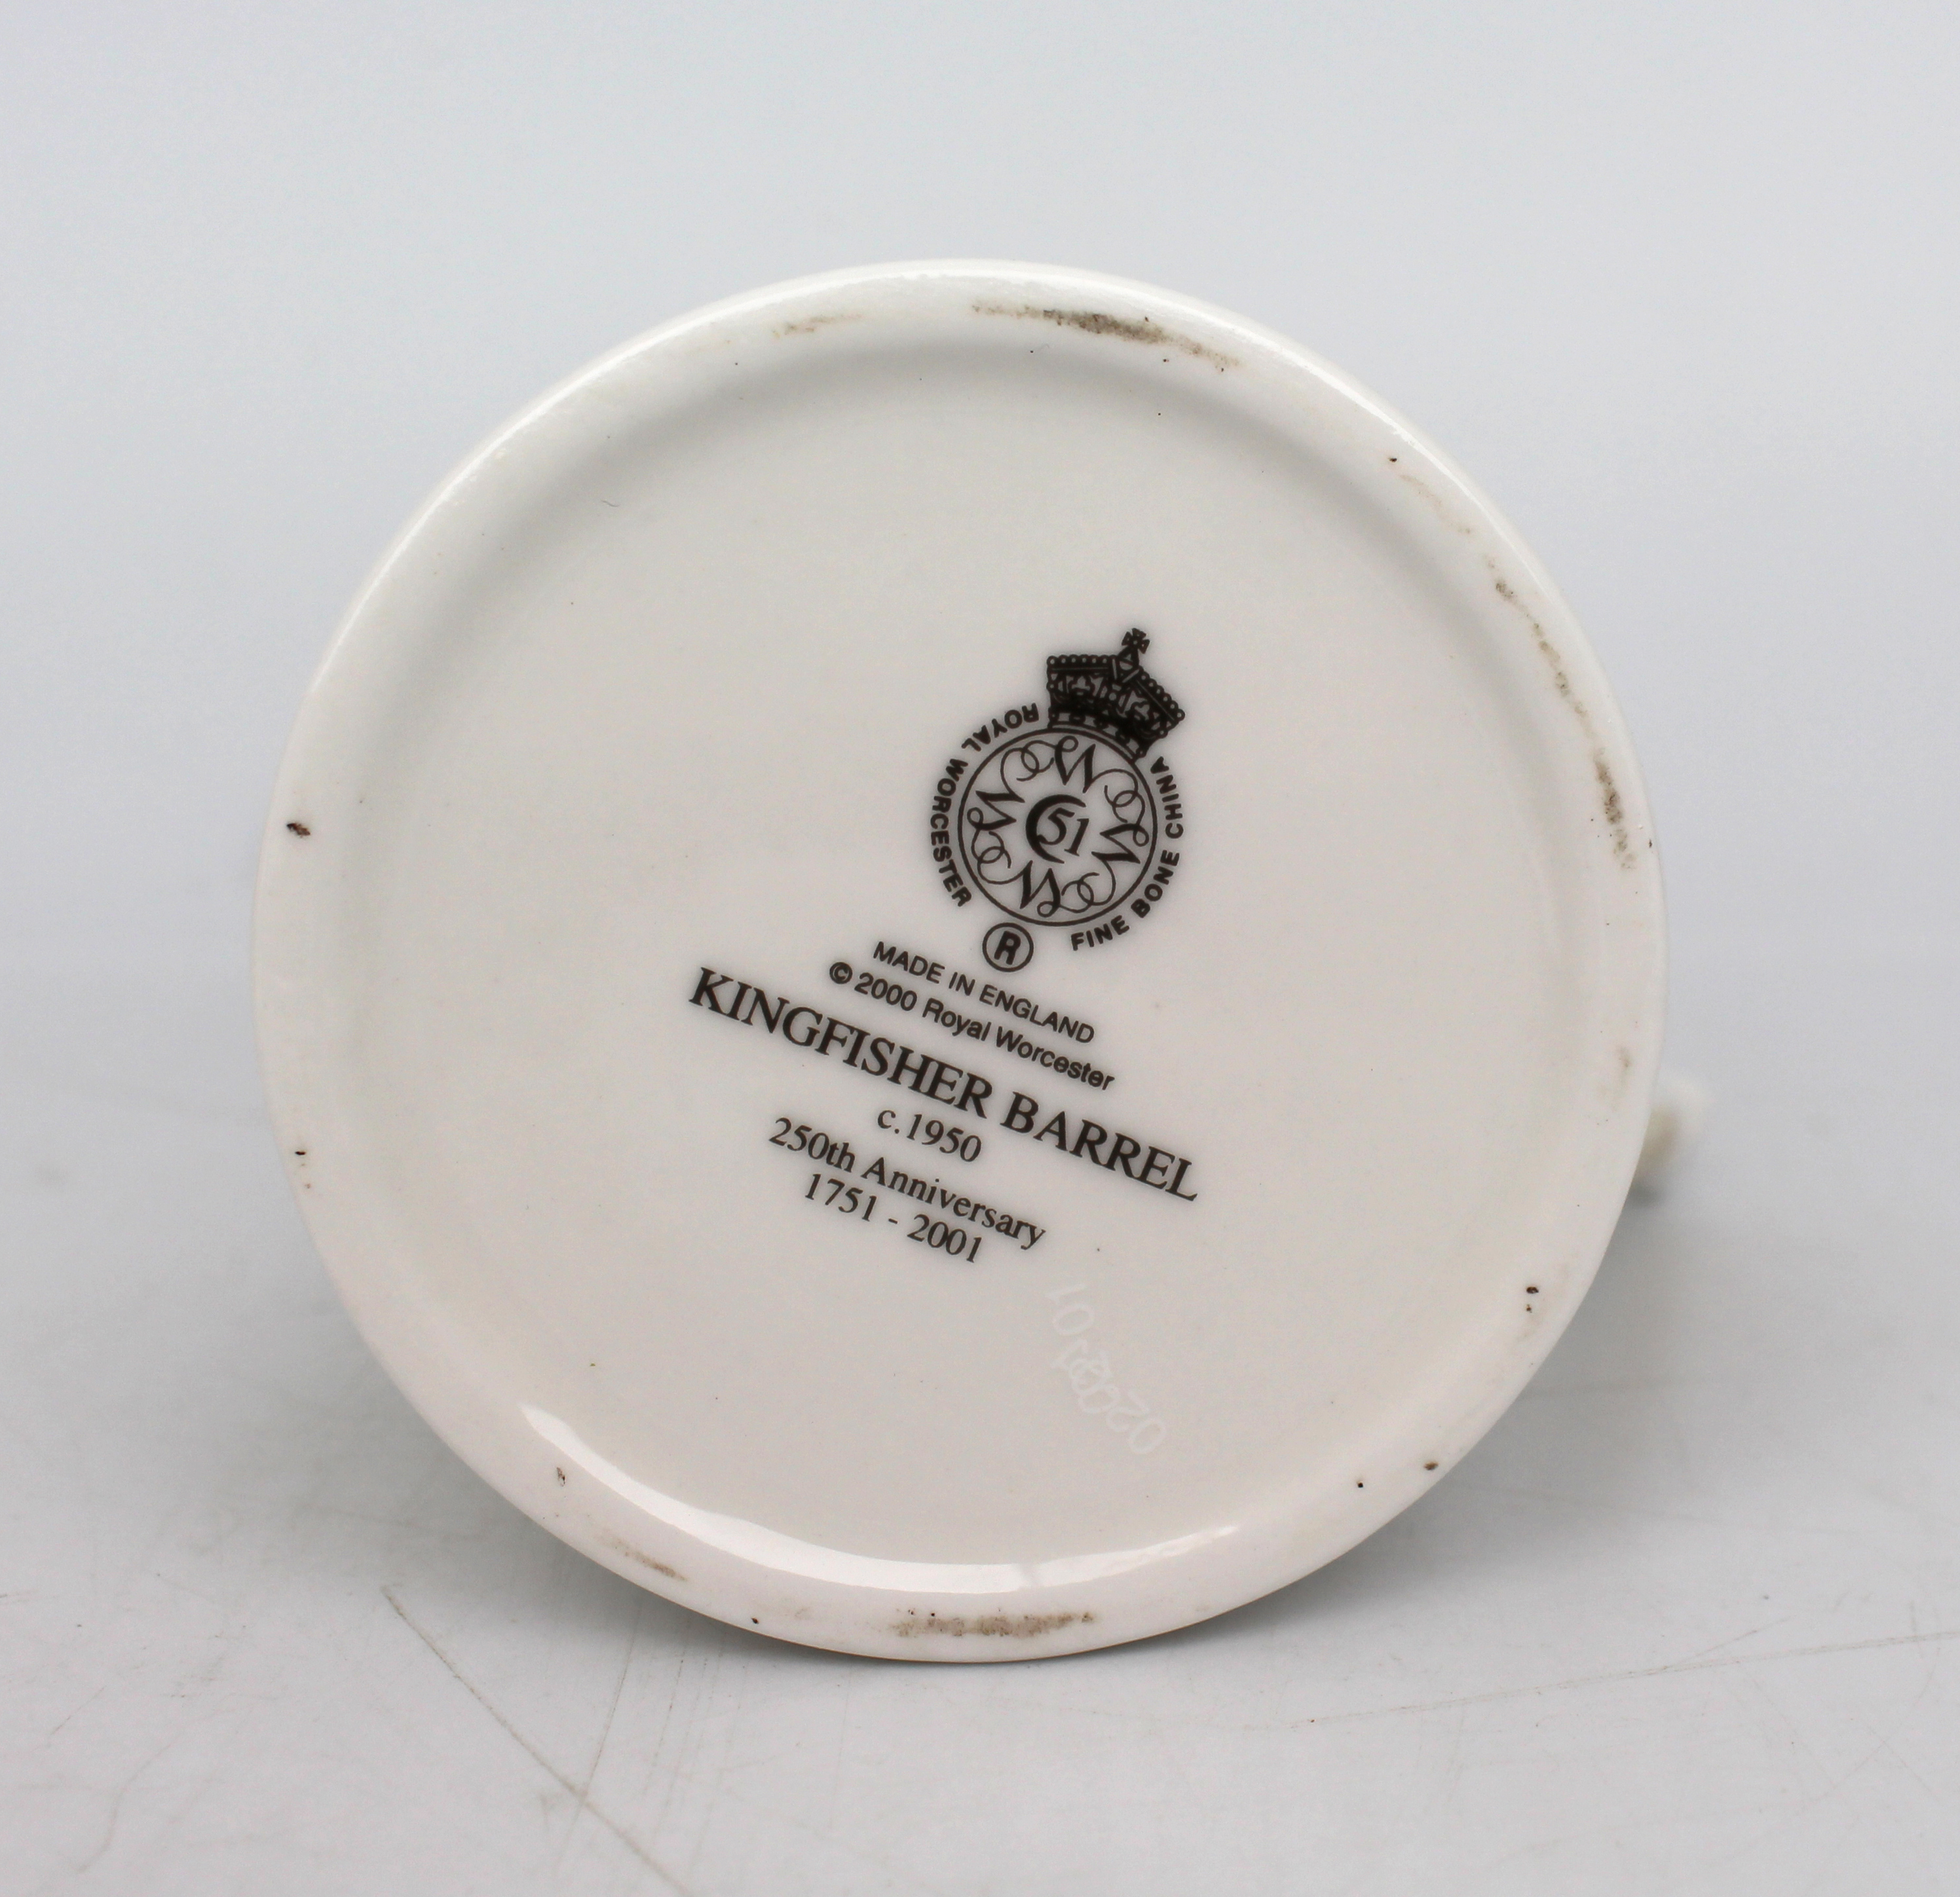 Royal Worcester Kingfisher Barrel Cream Jug - Image 5 of 5